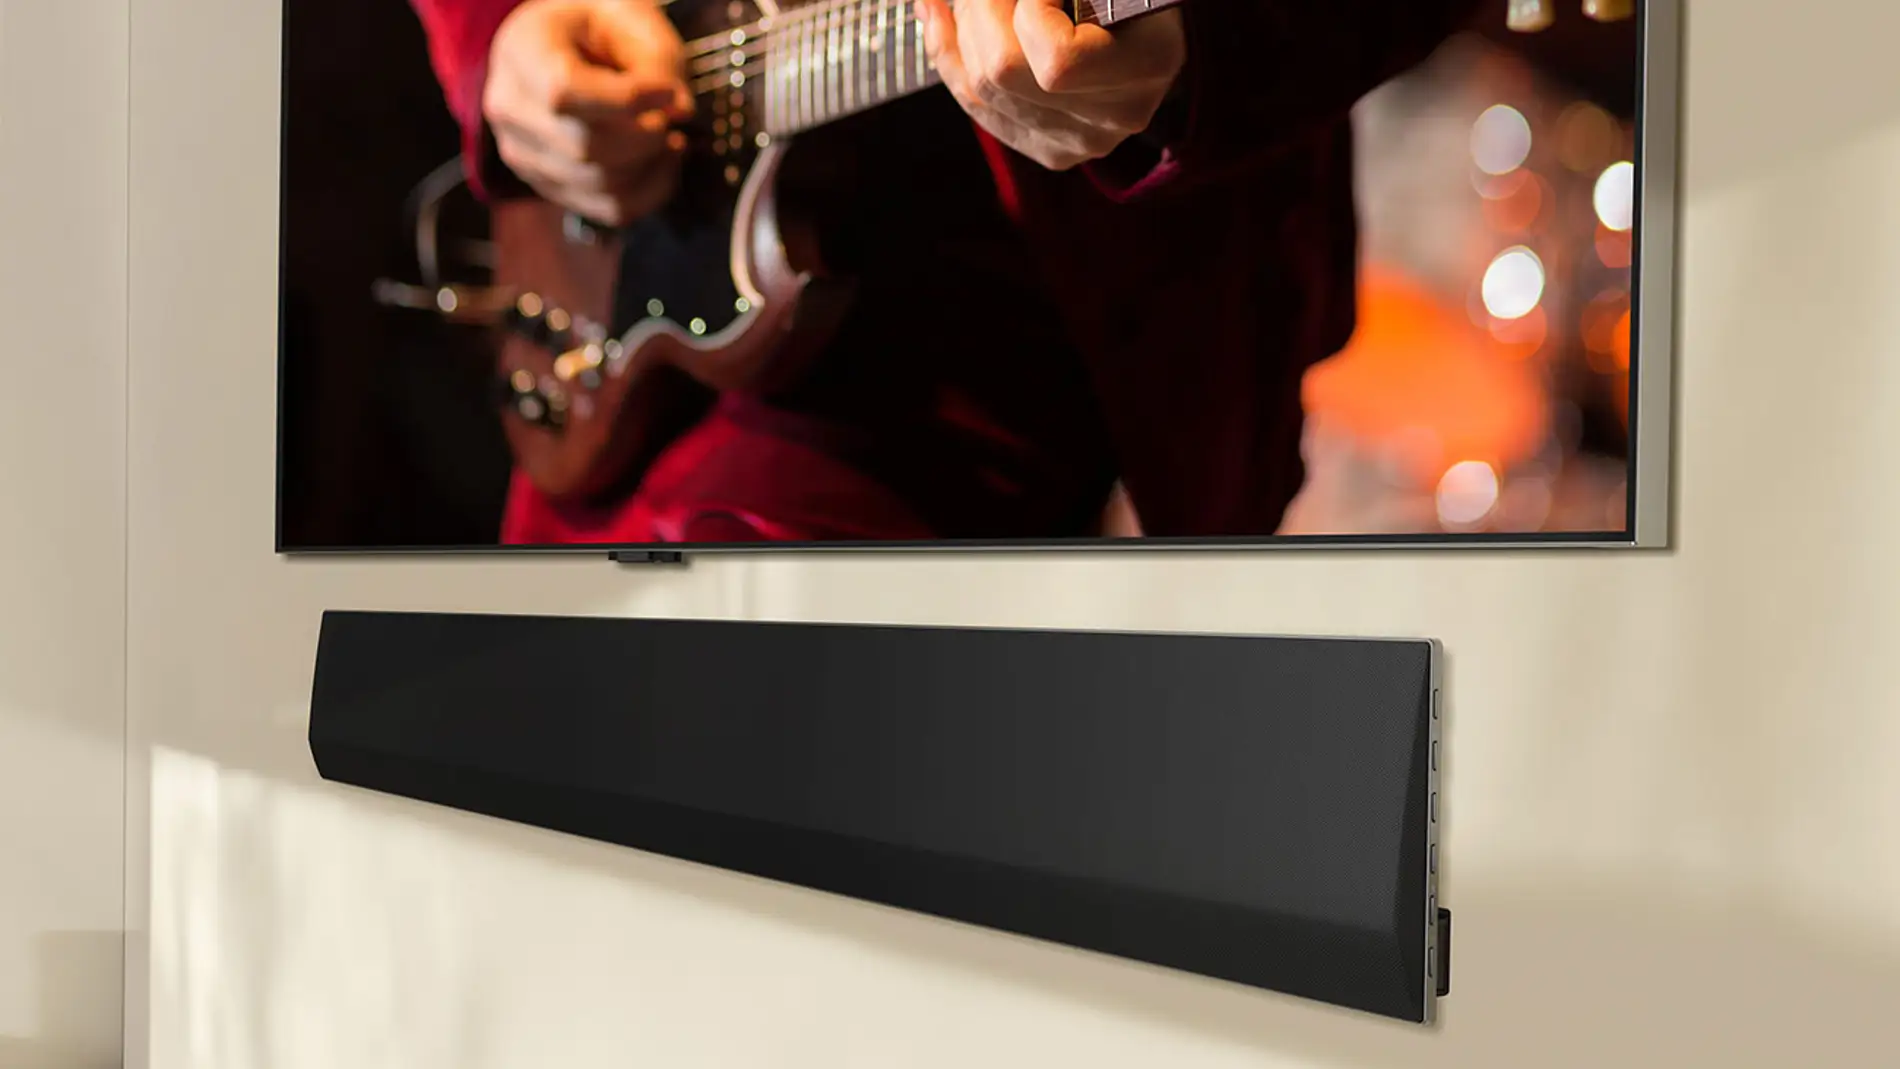 LG Soundbar - Conectar barra de sonido a televisor 